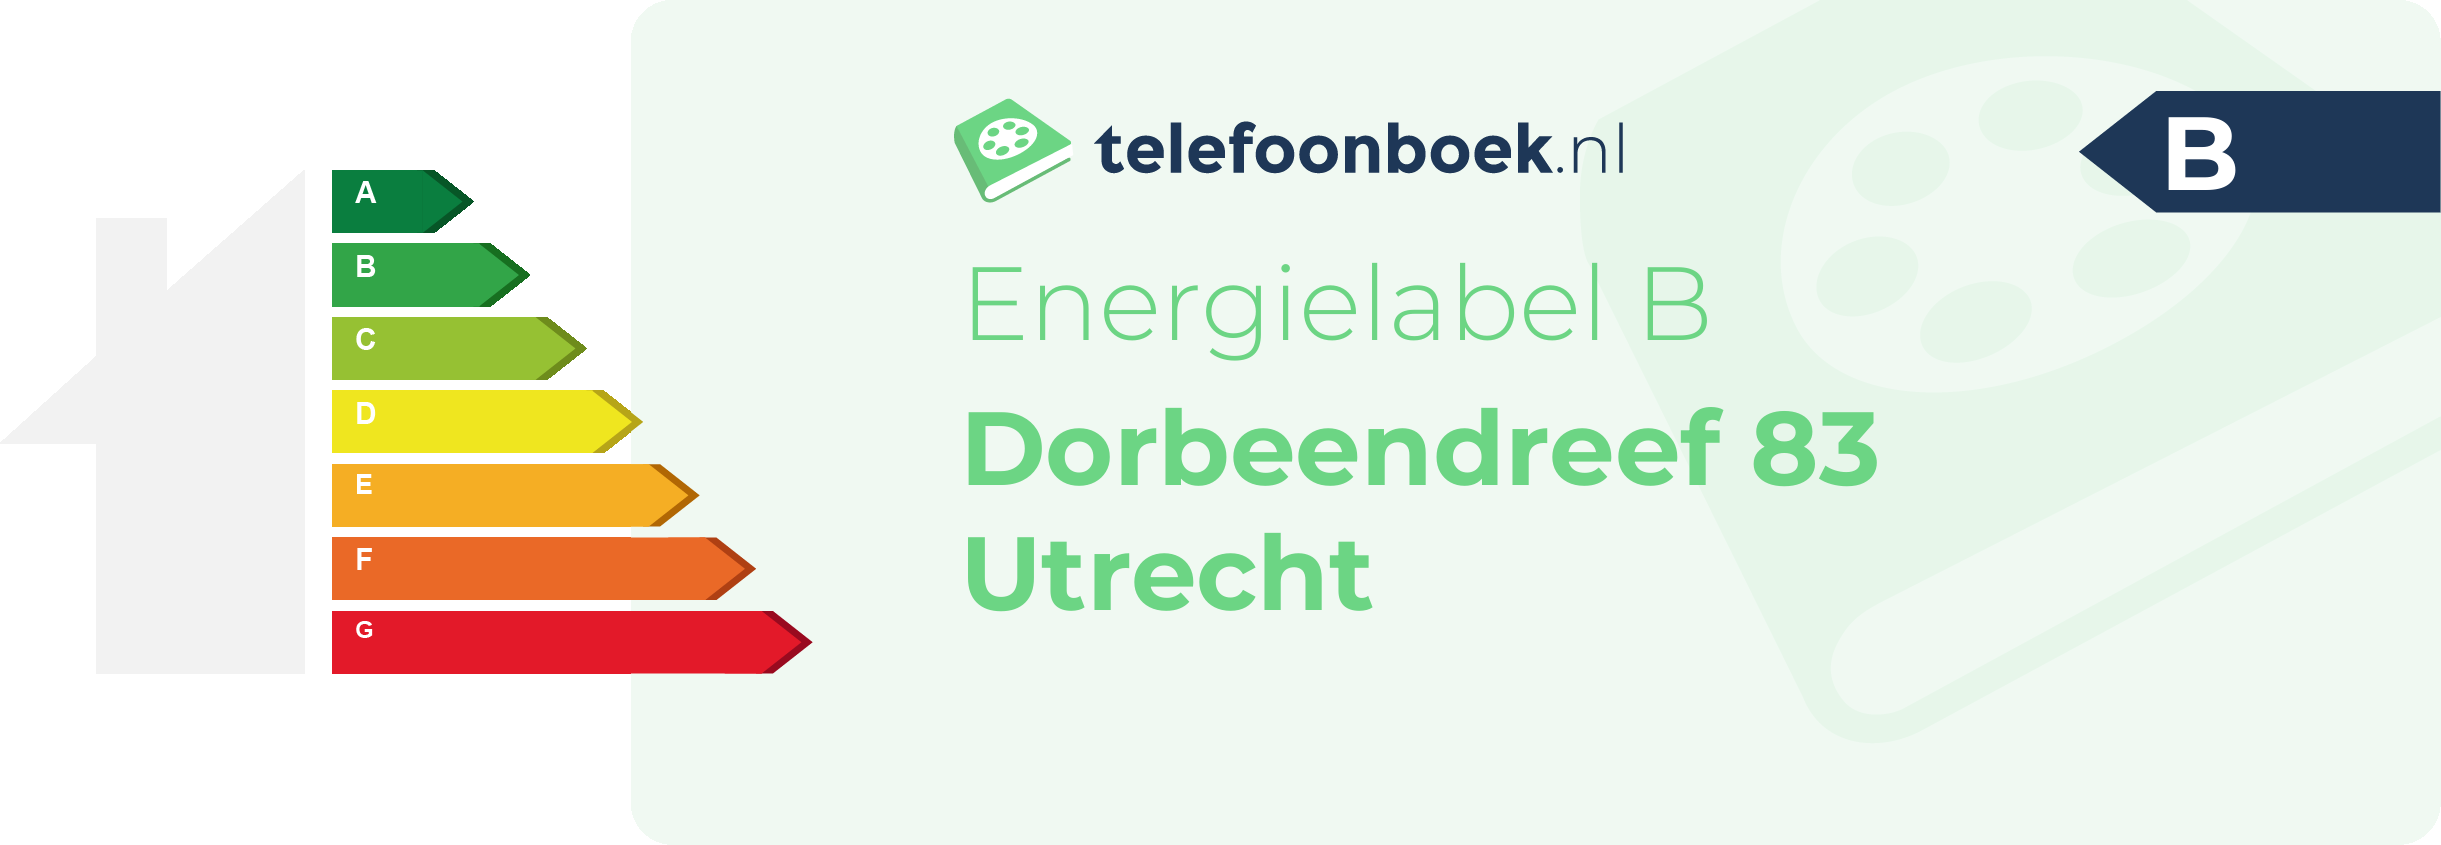 Energielabel Dorbeendreef 83 Utrecht